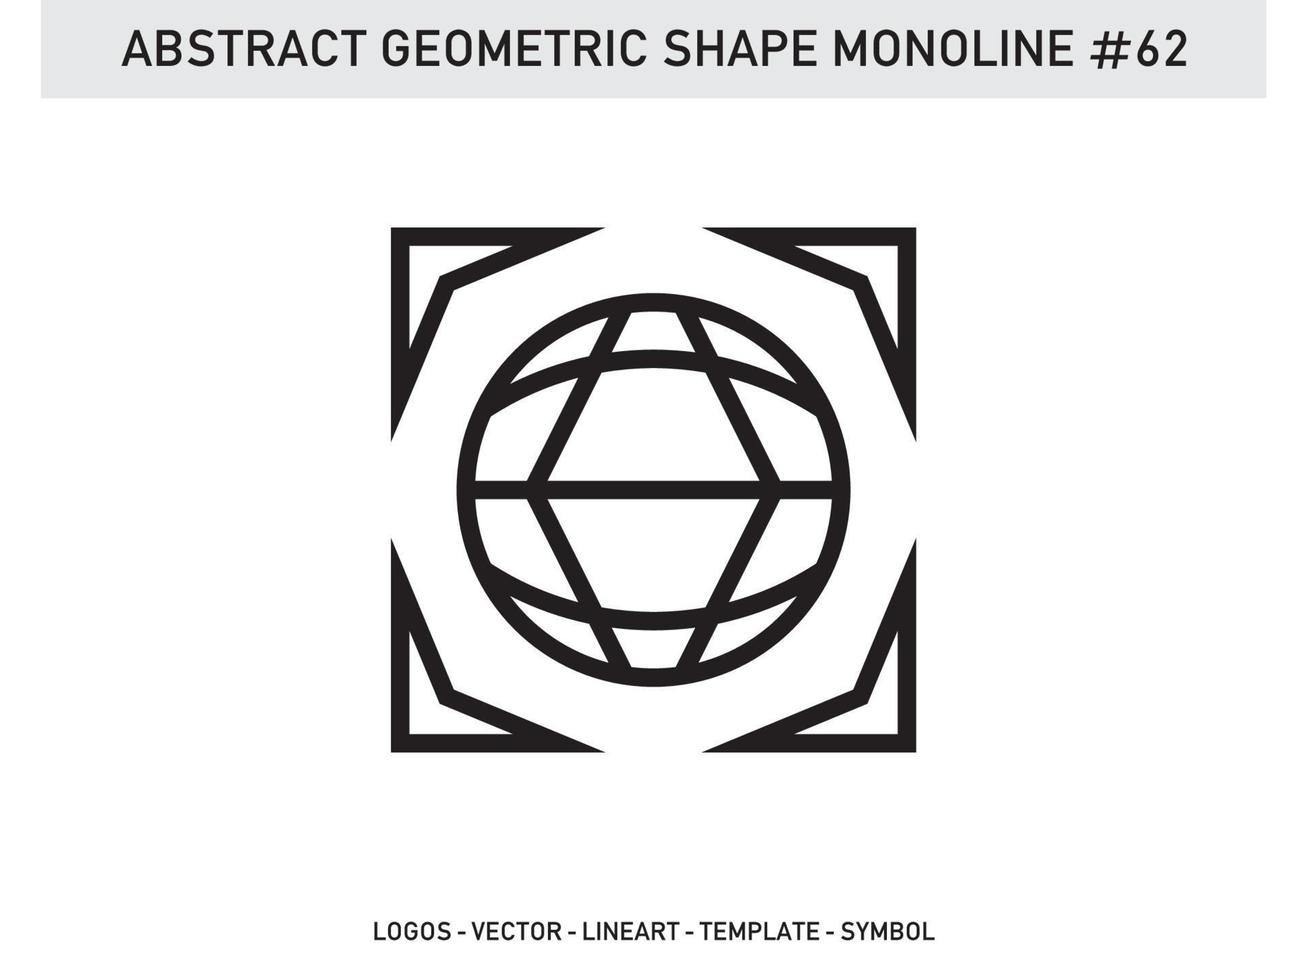 geometrische monoline lineart lijnvorm abstract gratis vector